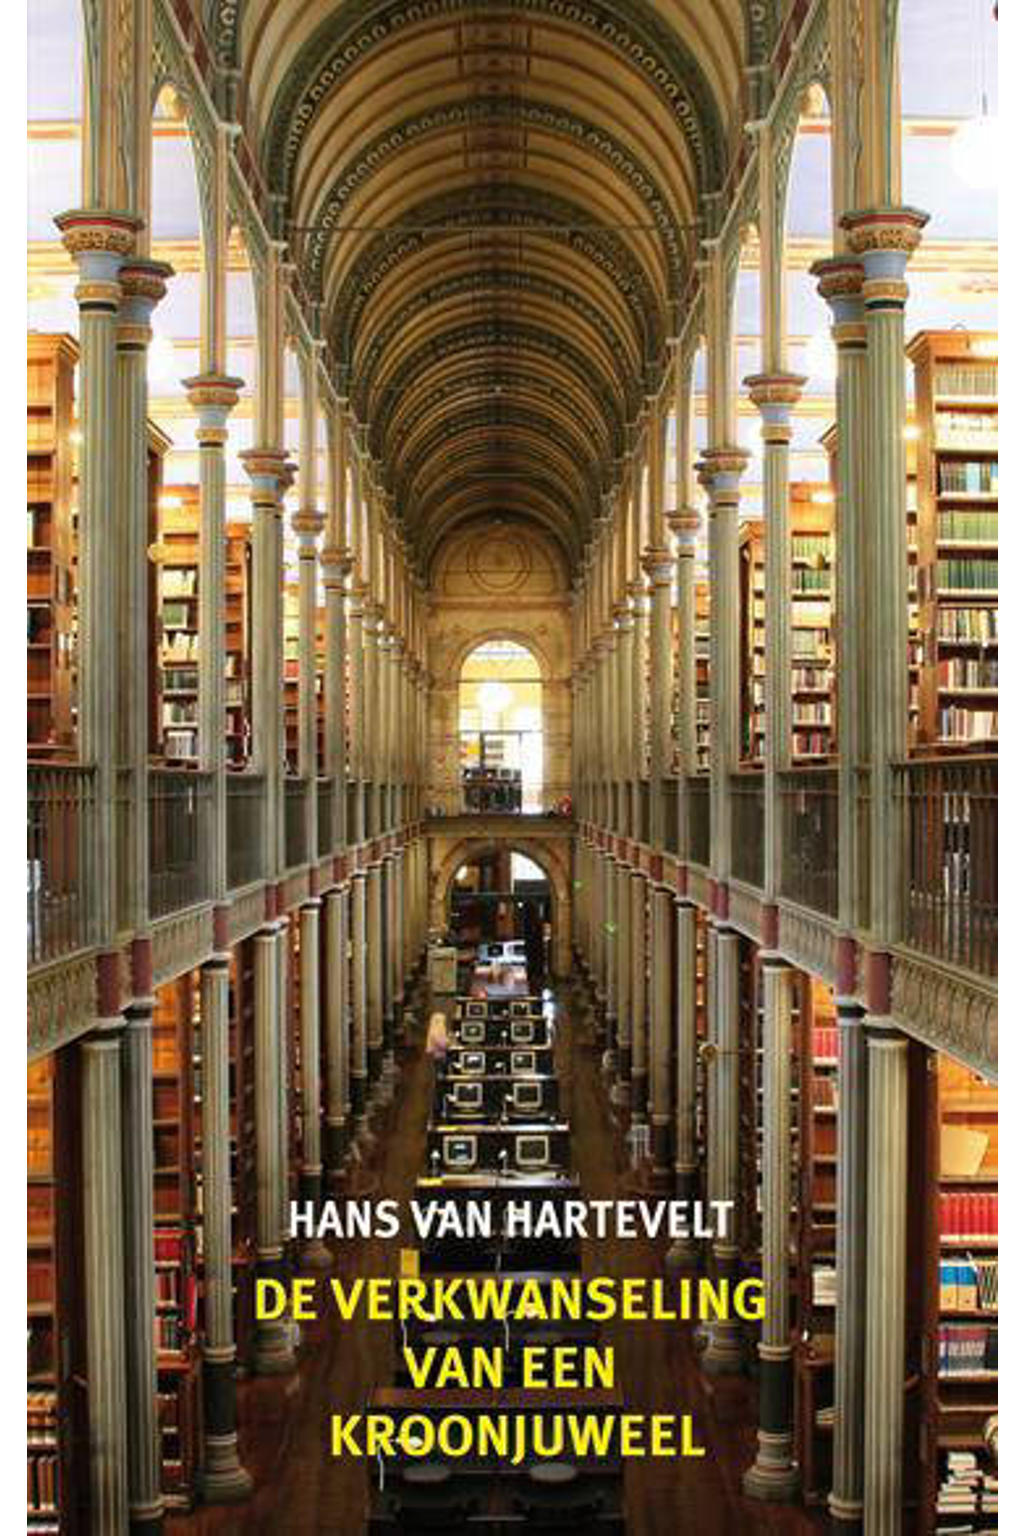 De verkwanseling van een kroonjuweel - Hans van Hartevelt